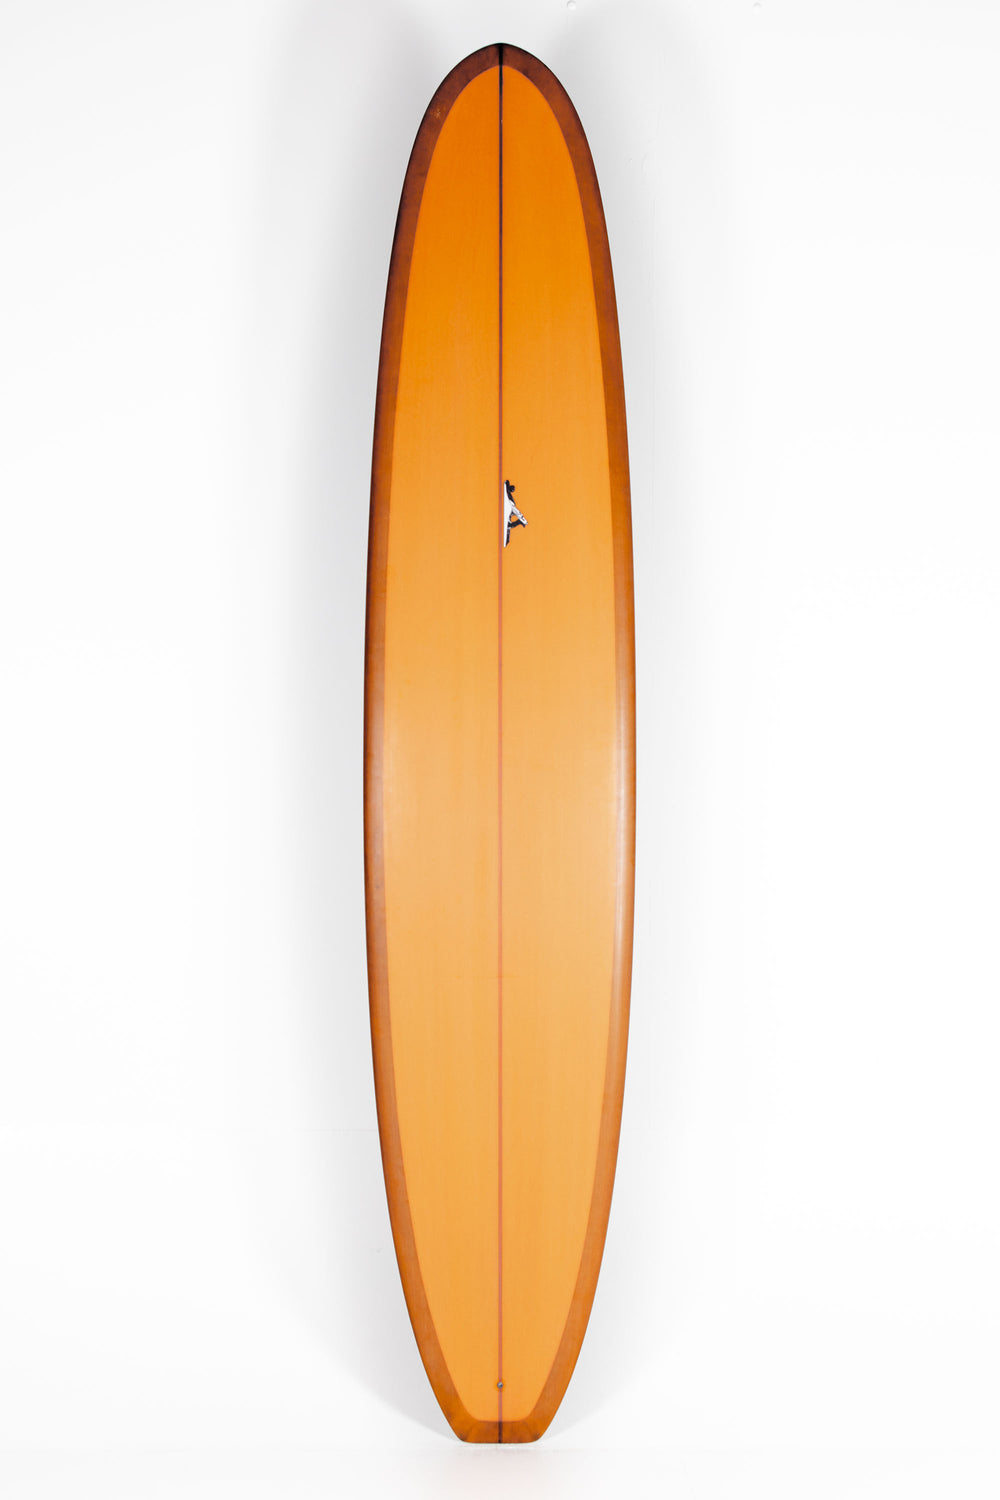 Pukas Surf Shop - Thomas Surfboards - HARRISON CONCEPT - 9'9